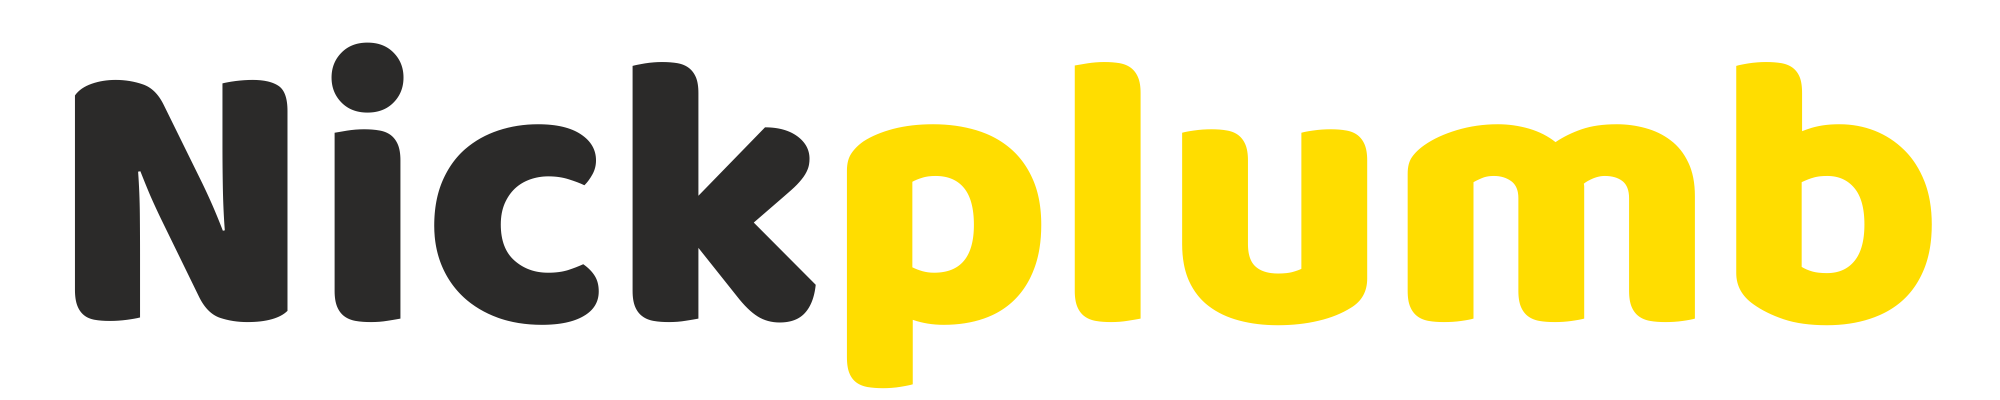 Nick Plumb Sticky Logo